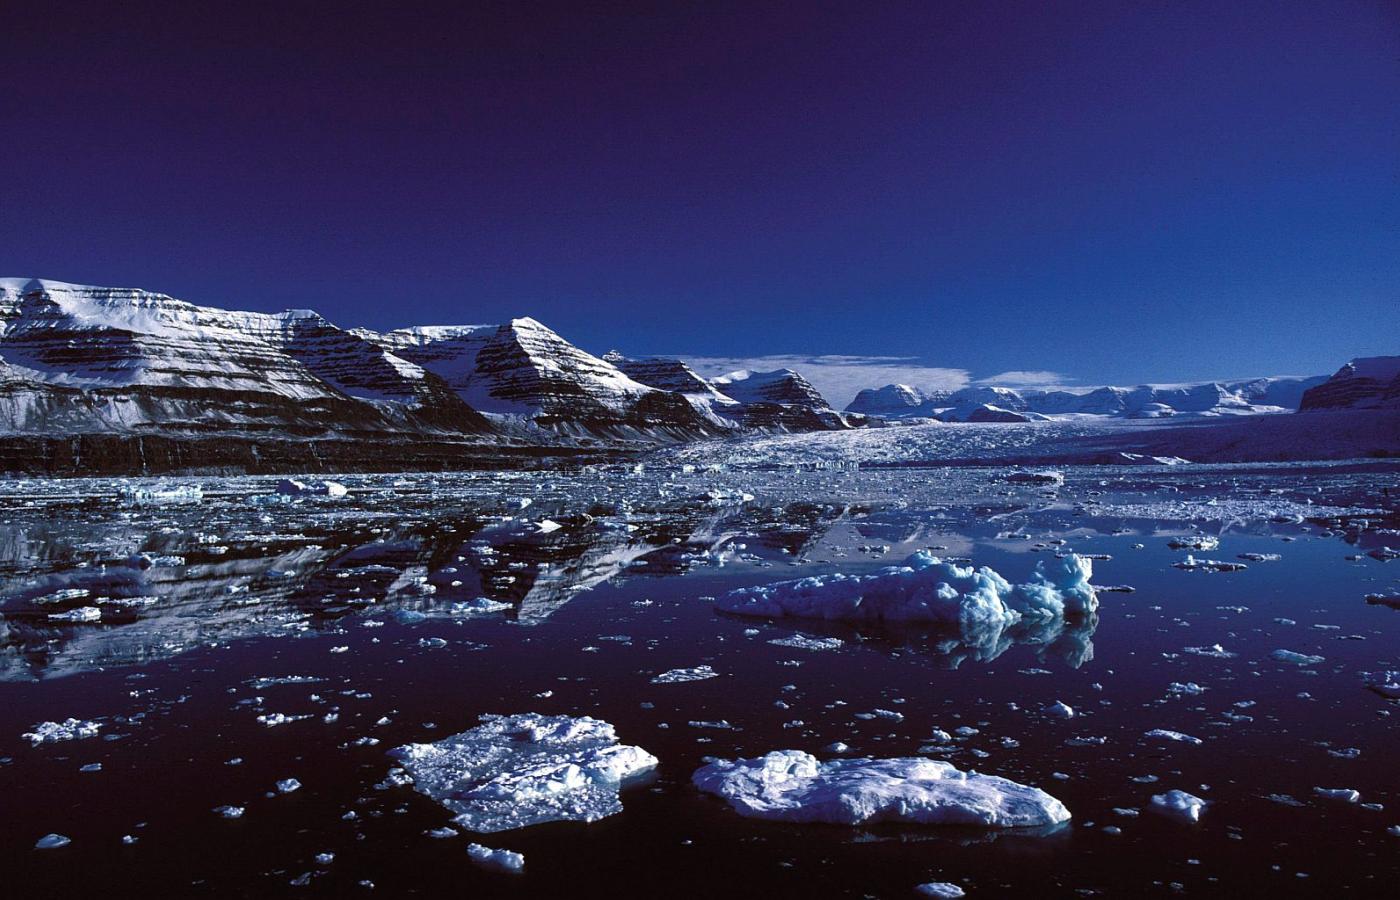 Arktyka jest piękna i niezwykła, ale czy w ogóle przetrwa. Scoresby Sound - system fiordów na wschodnim brzegu Grenlandii.